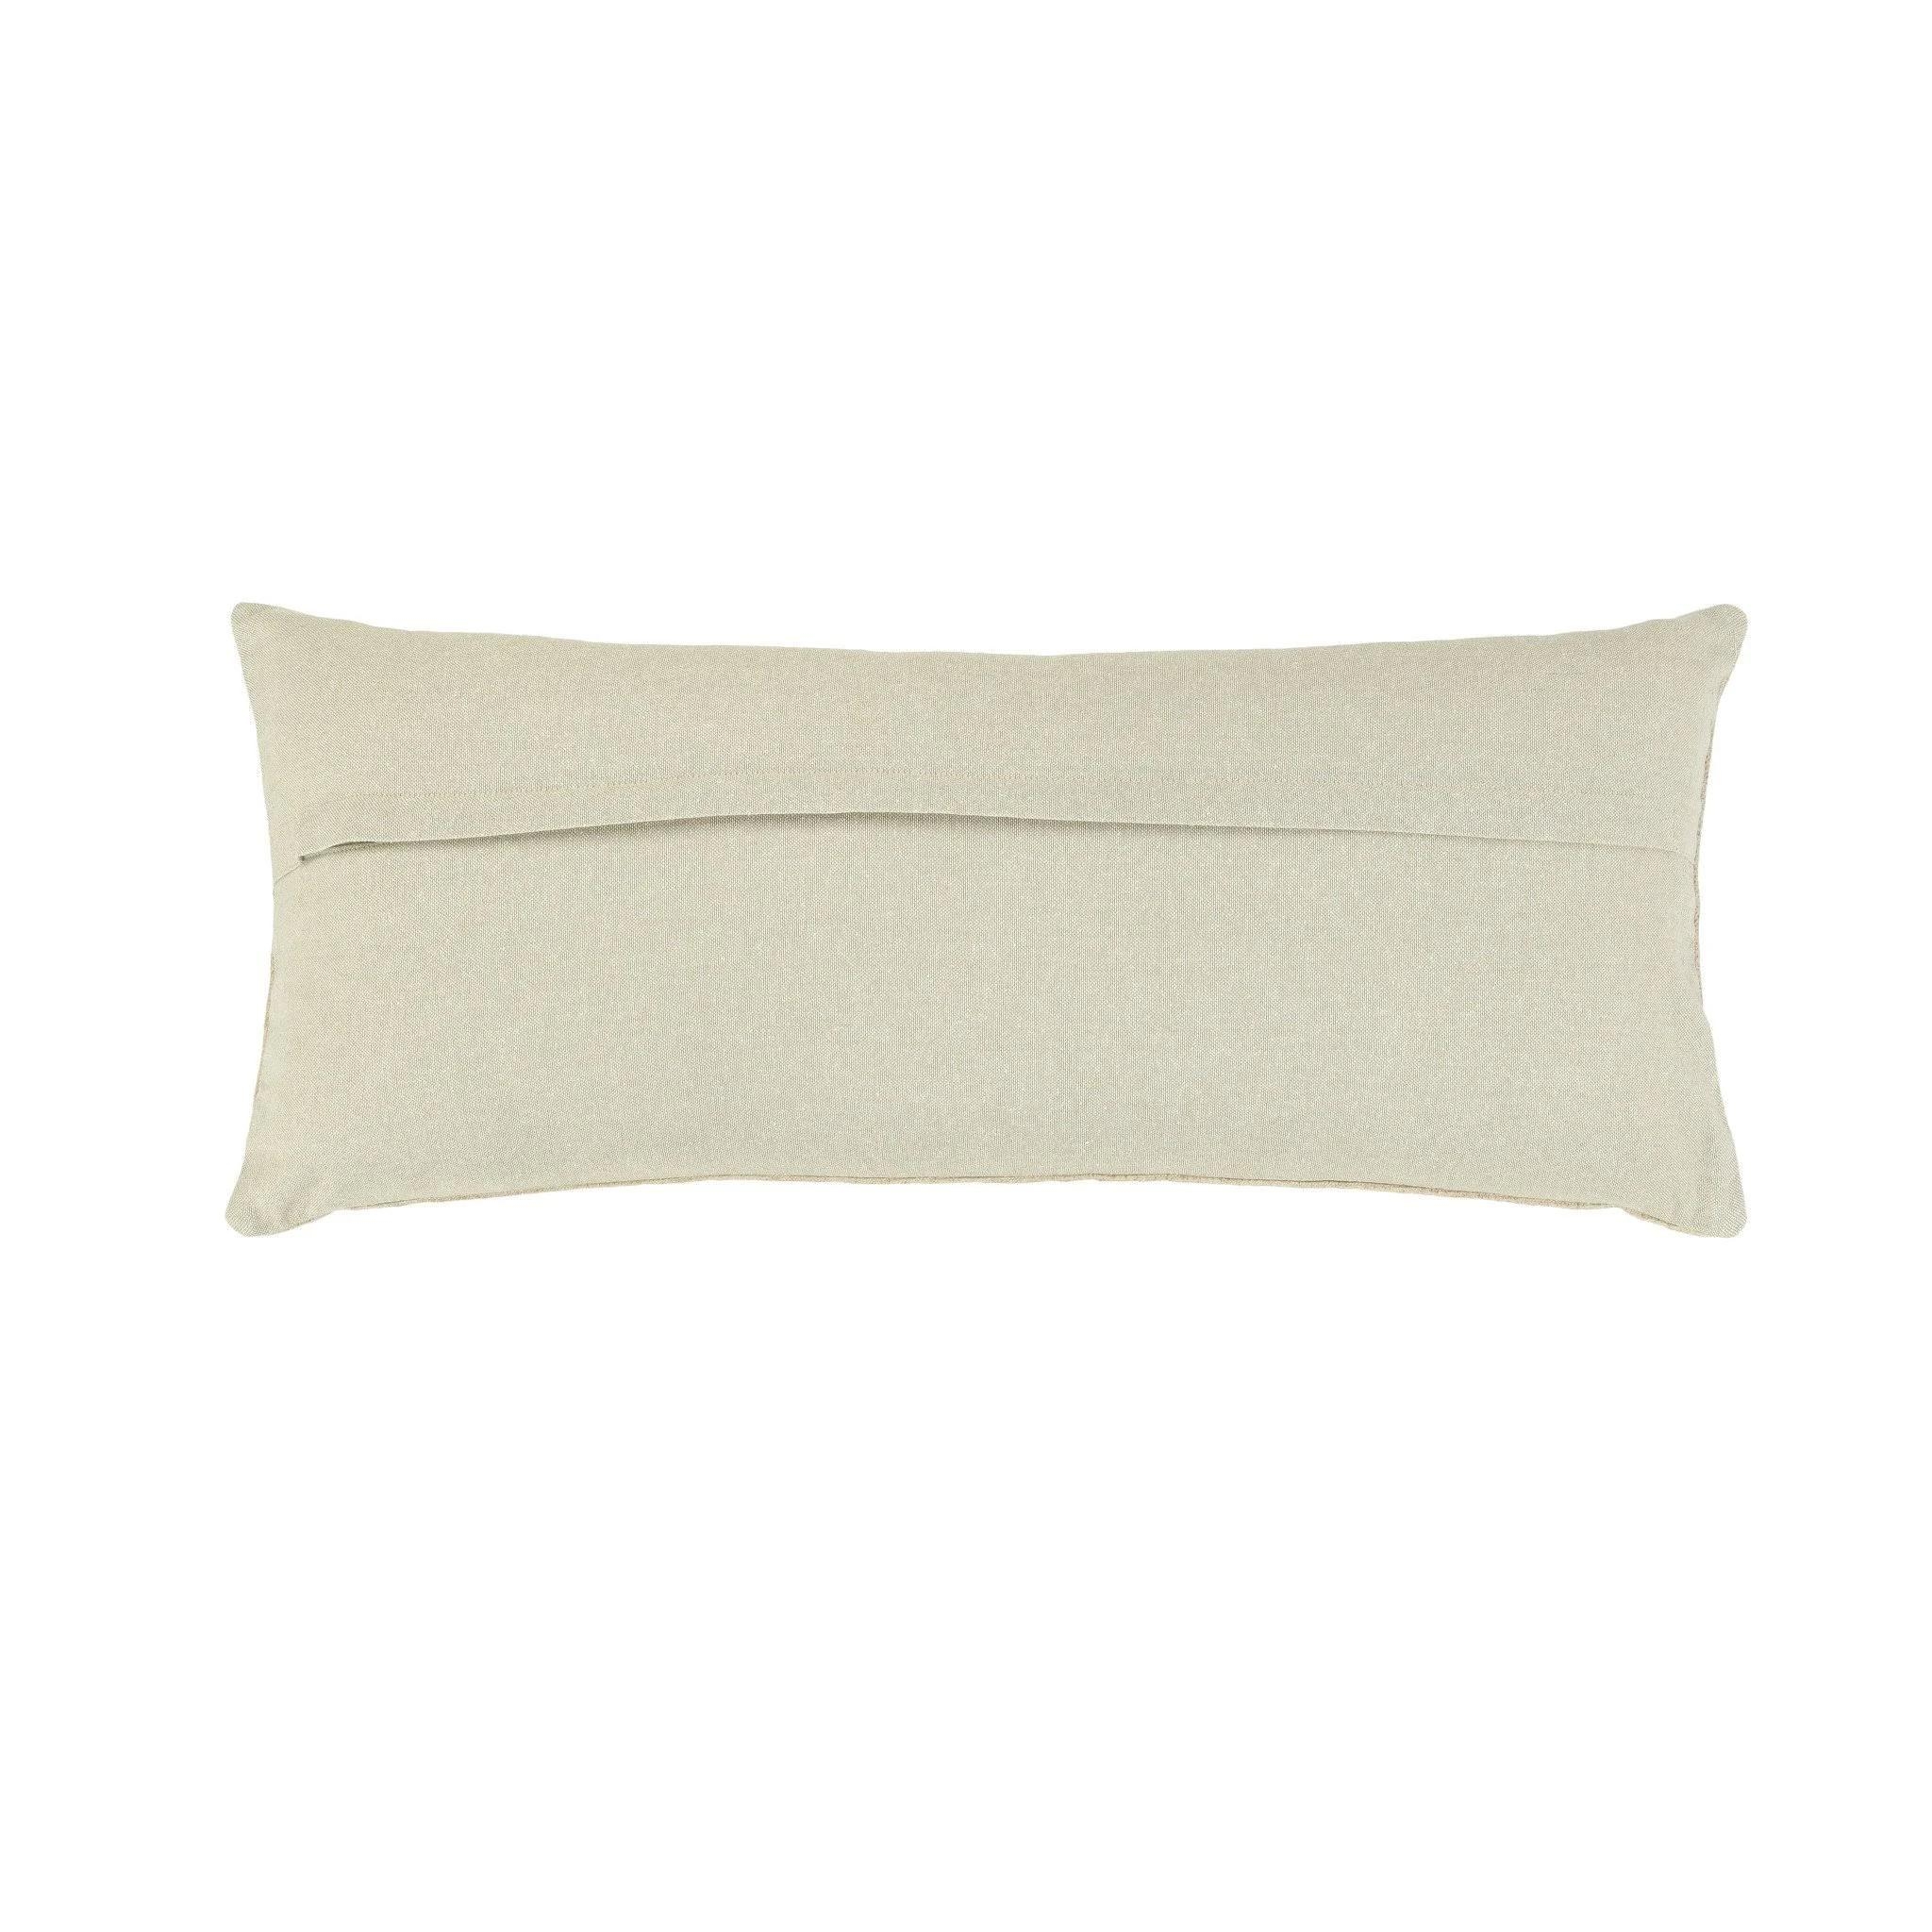 Kason Lumbar Pillow, 32" x 14" - Image 2